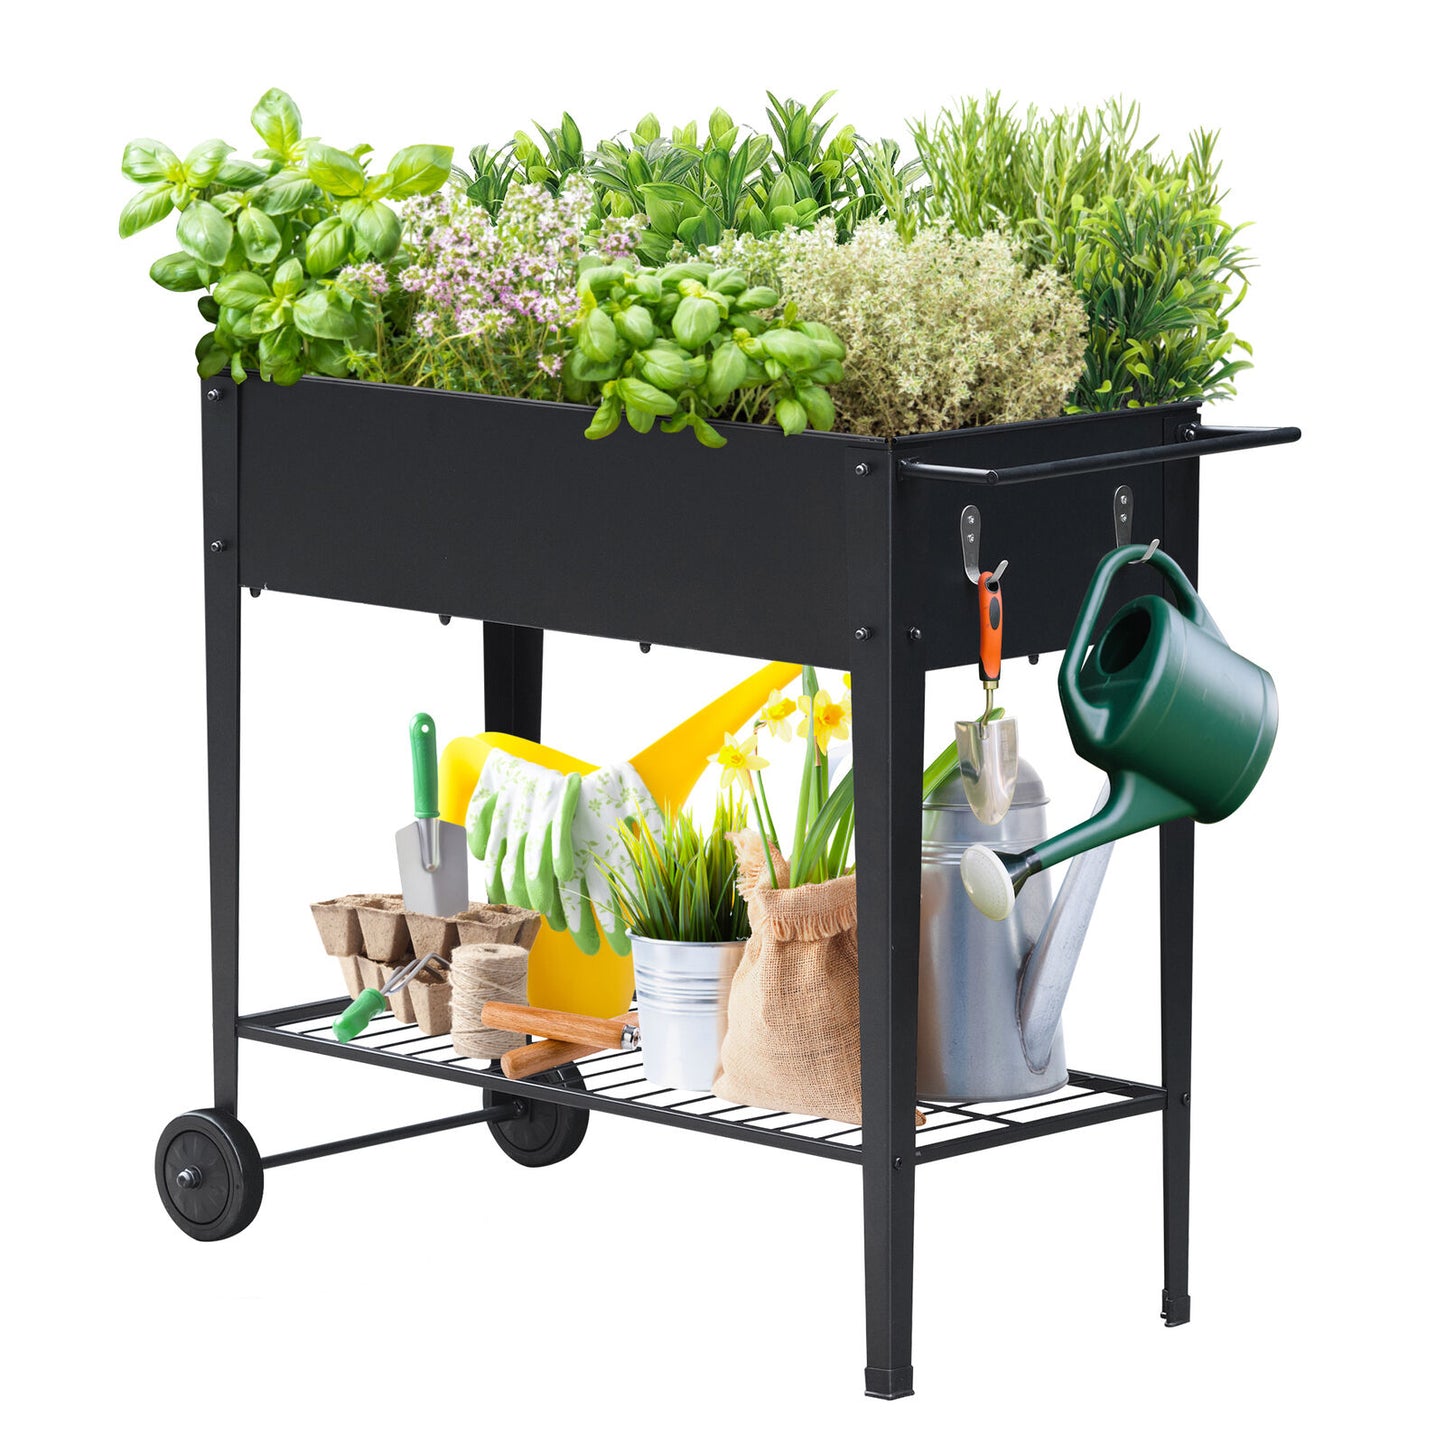 3.1ft x 1ft Raised Mobile Garden Bed Cart Metal Planter Box W/Wheels HandleBar